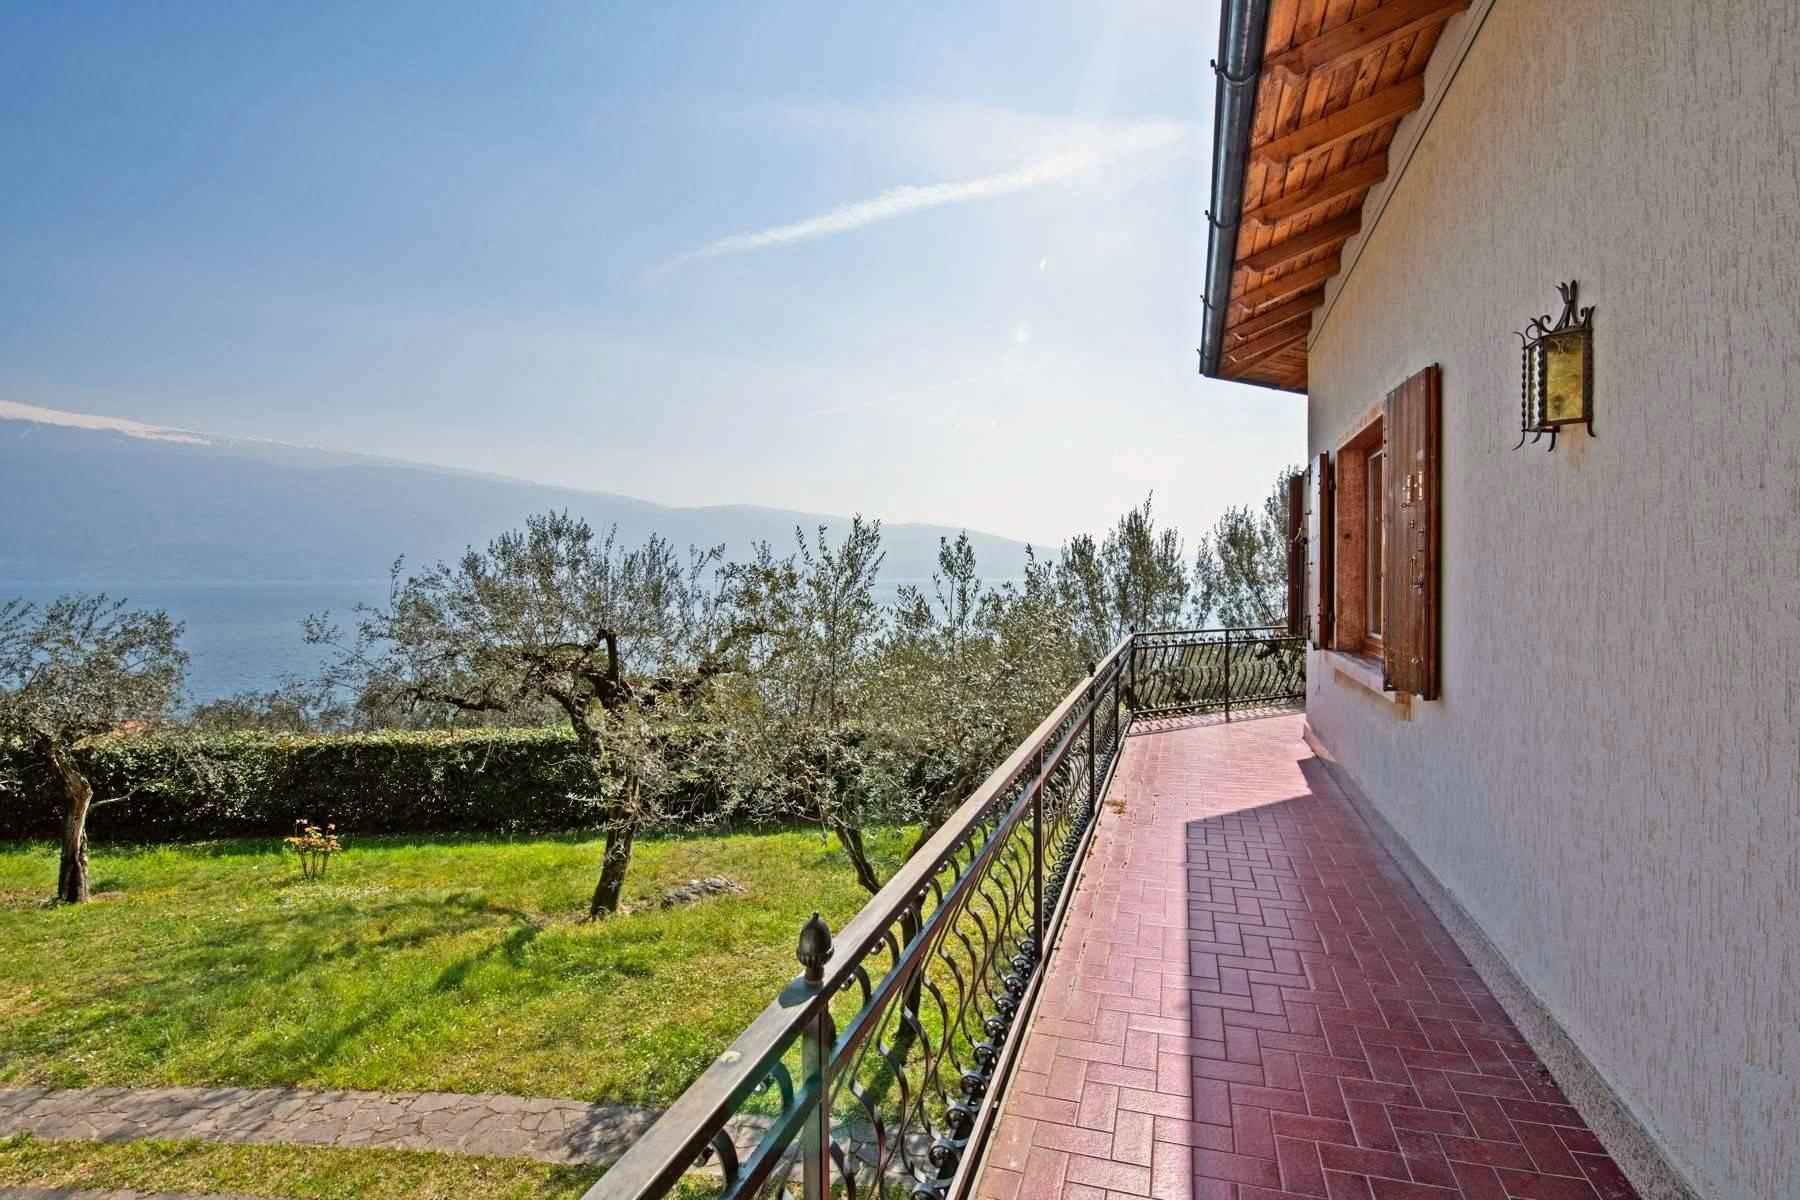 Villa in Gargnano inmitten der Olivenbäume vom Gardasee mit herrlichem Seeblick - 3